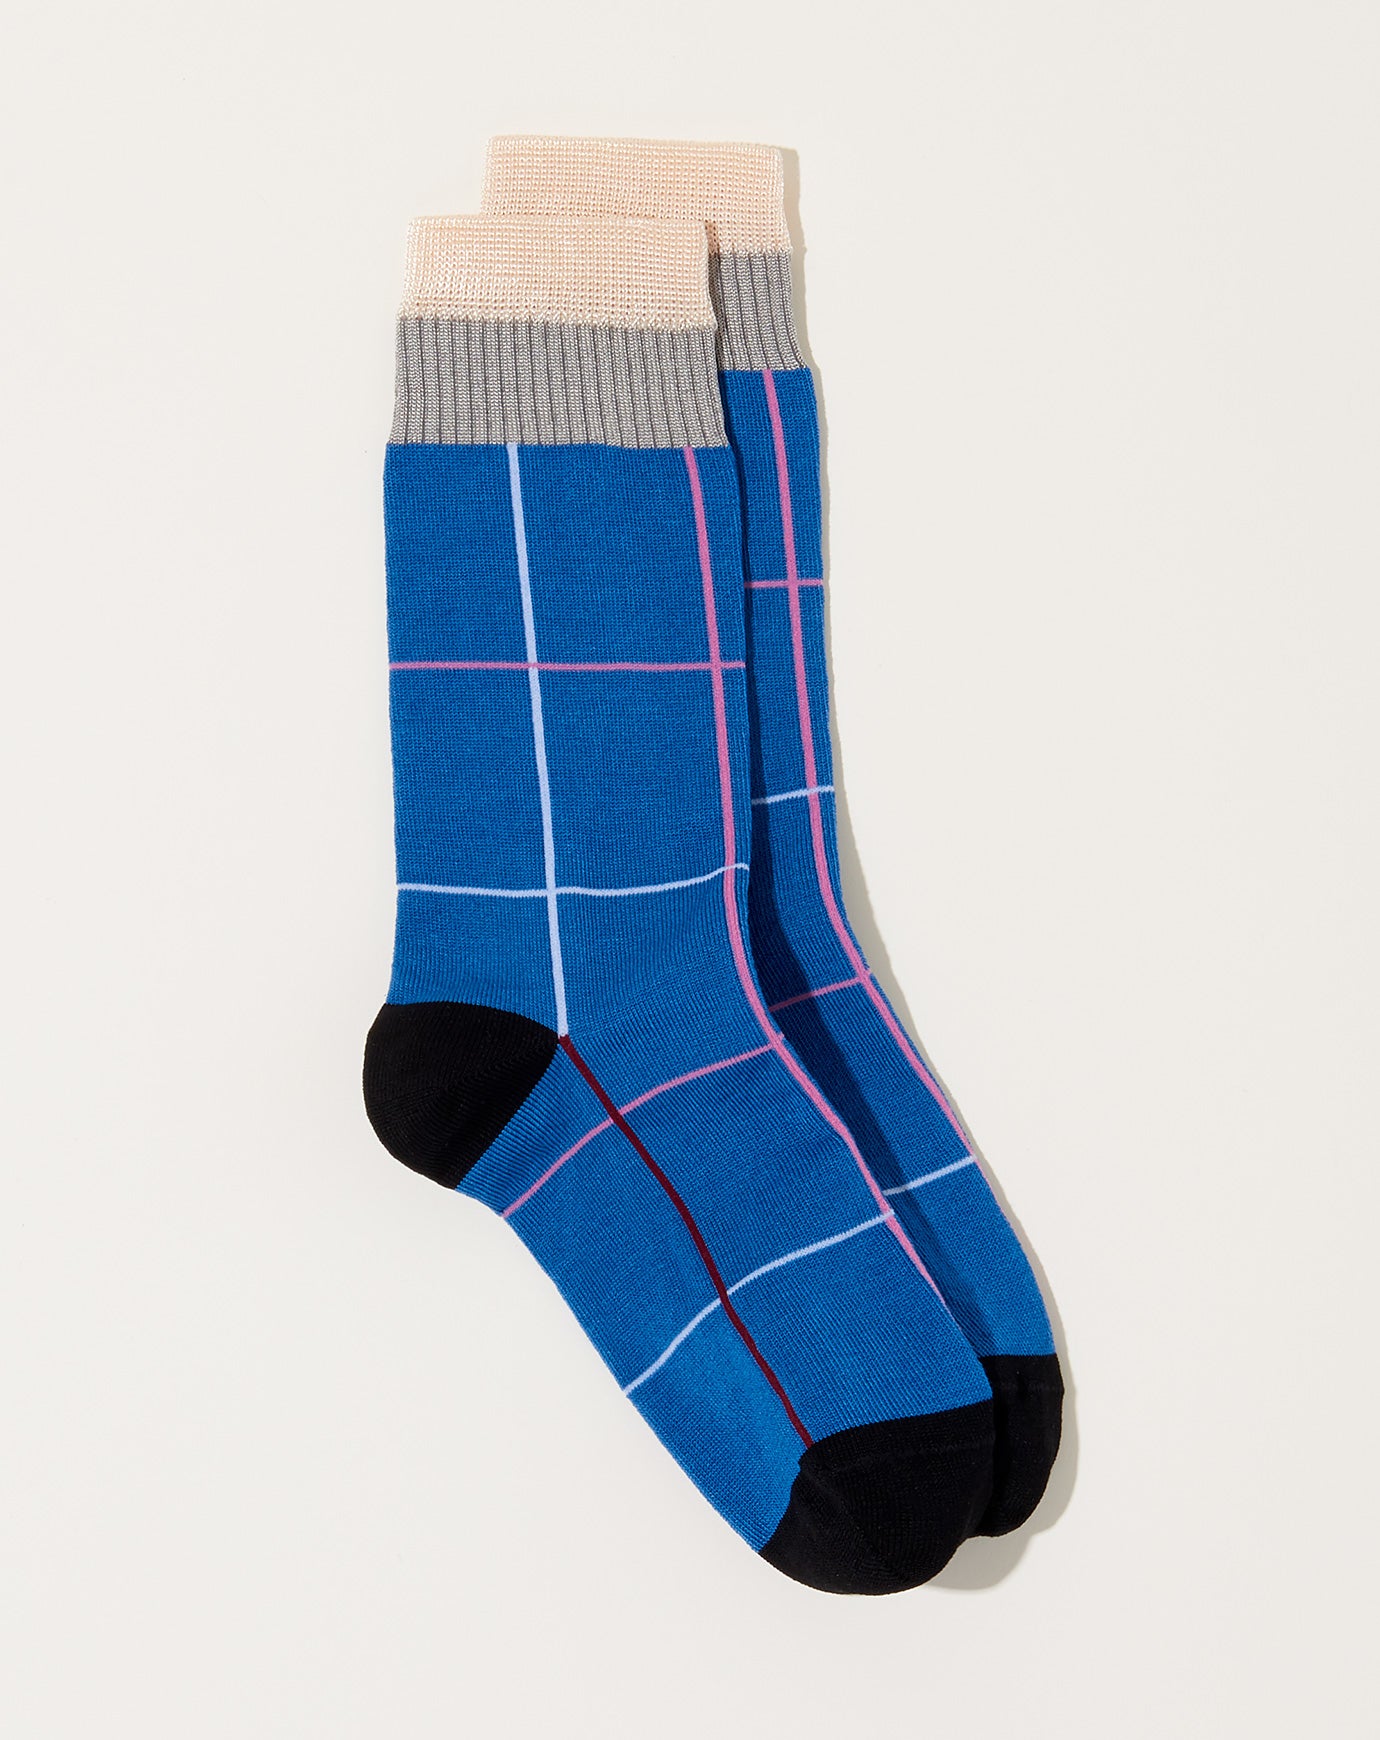 Exquisite J Finestrado Socks in Blue